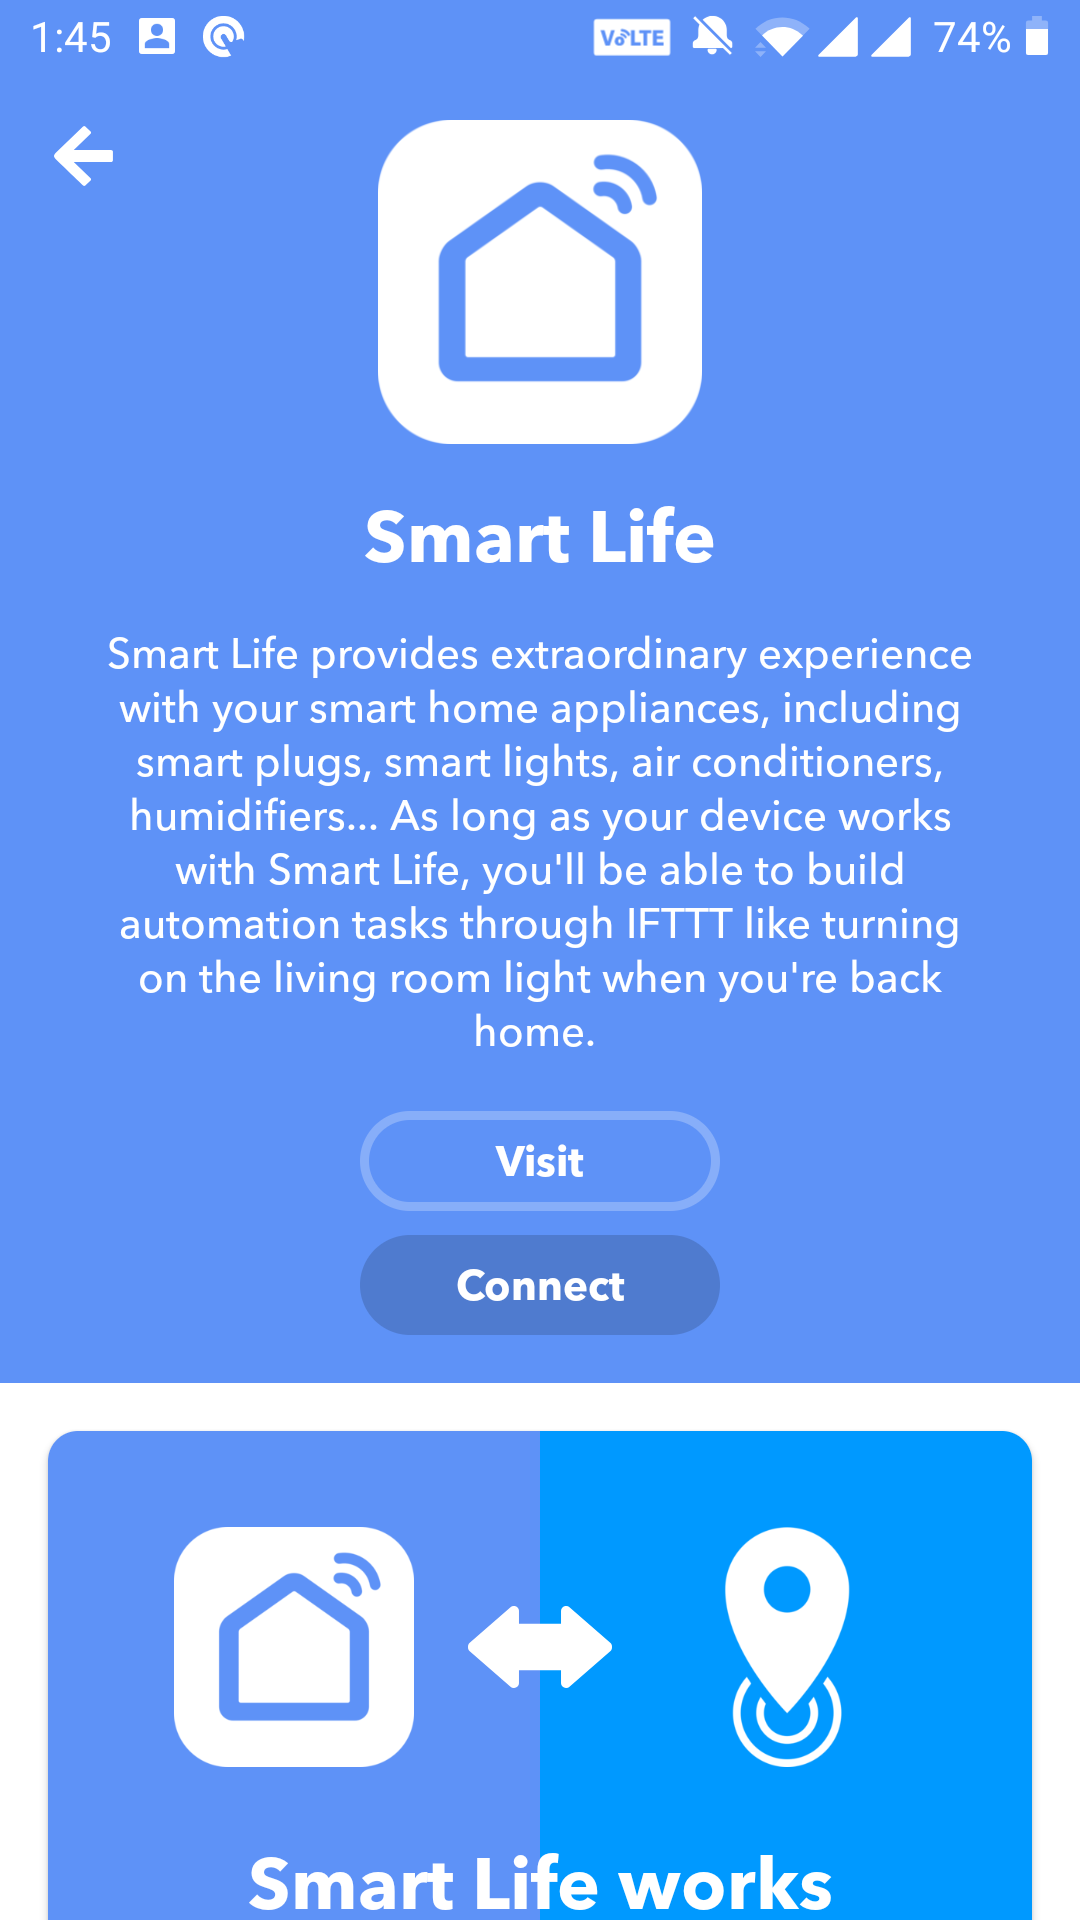 connect smart life - 6 automazioni IFTTT da provare con una presa intelligente o una lampadina